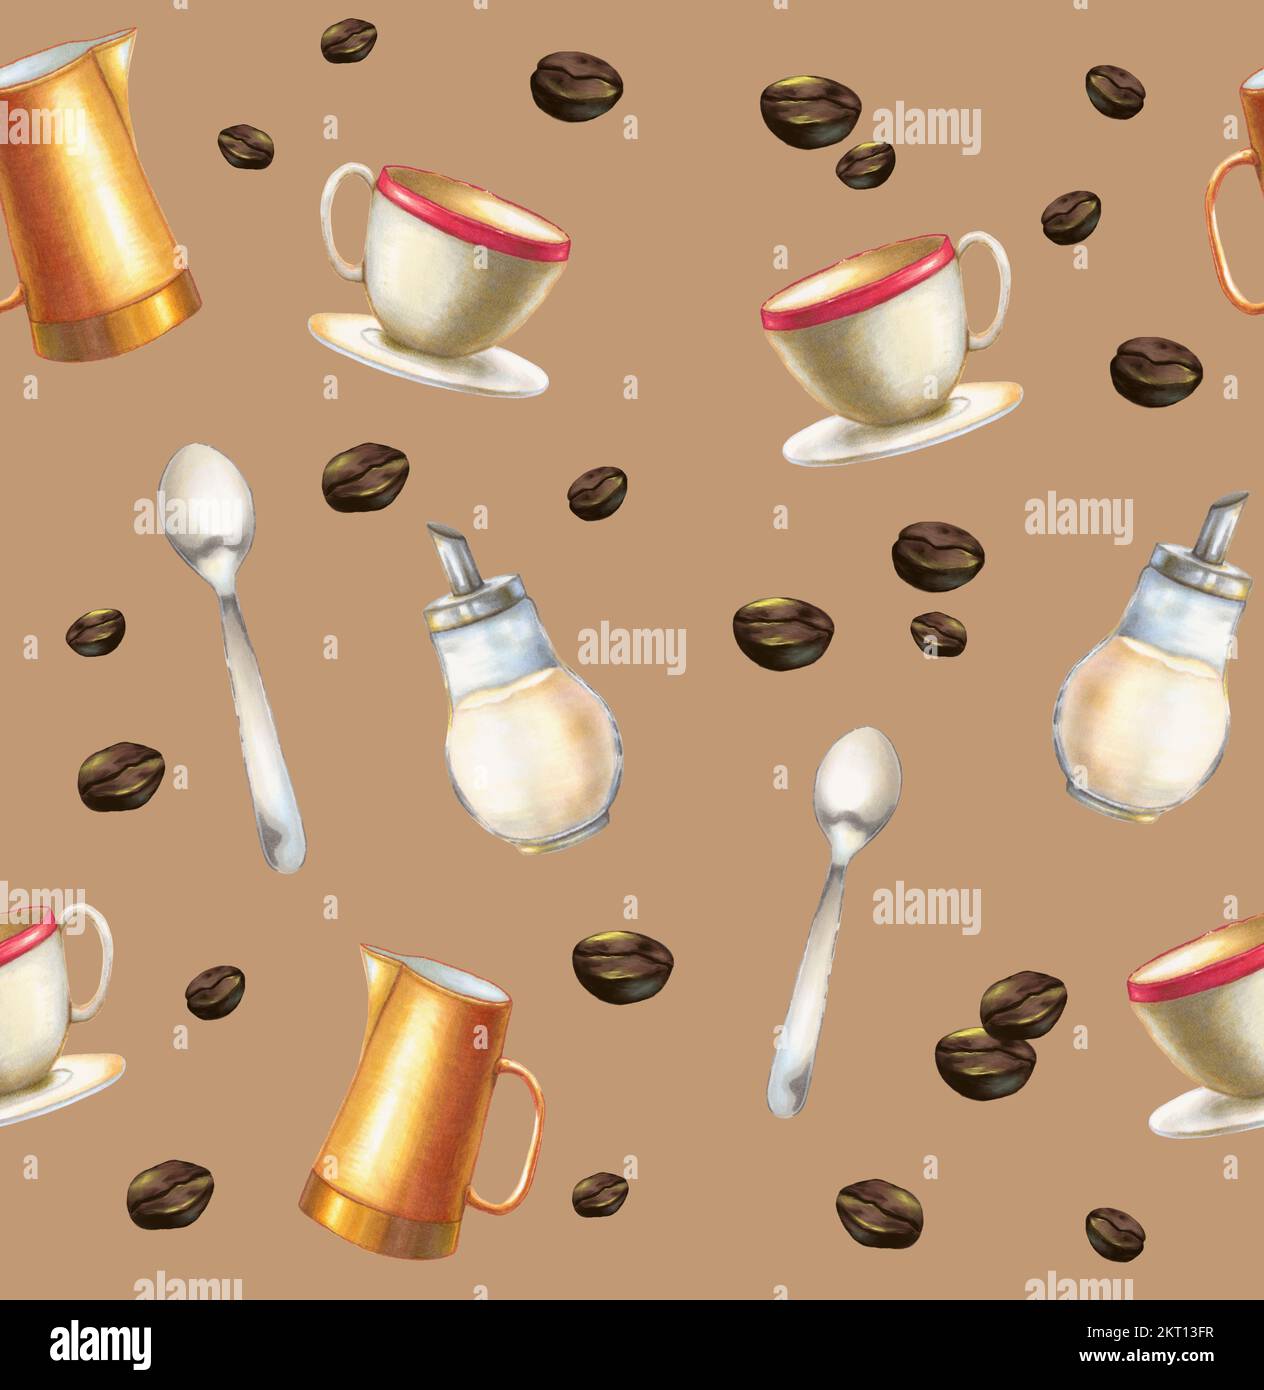 Patrón de café con taza, jarra, cuchara y dispensador de azúcar. Ilustración digital con elementos dibujados a mano. Foto de stock